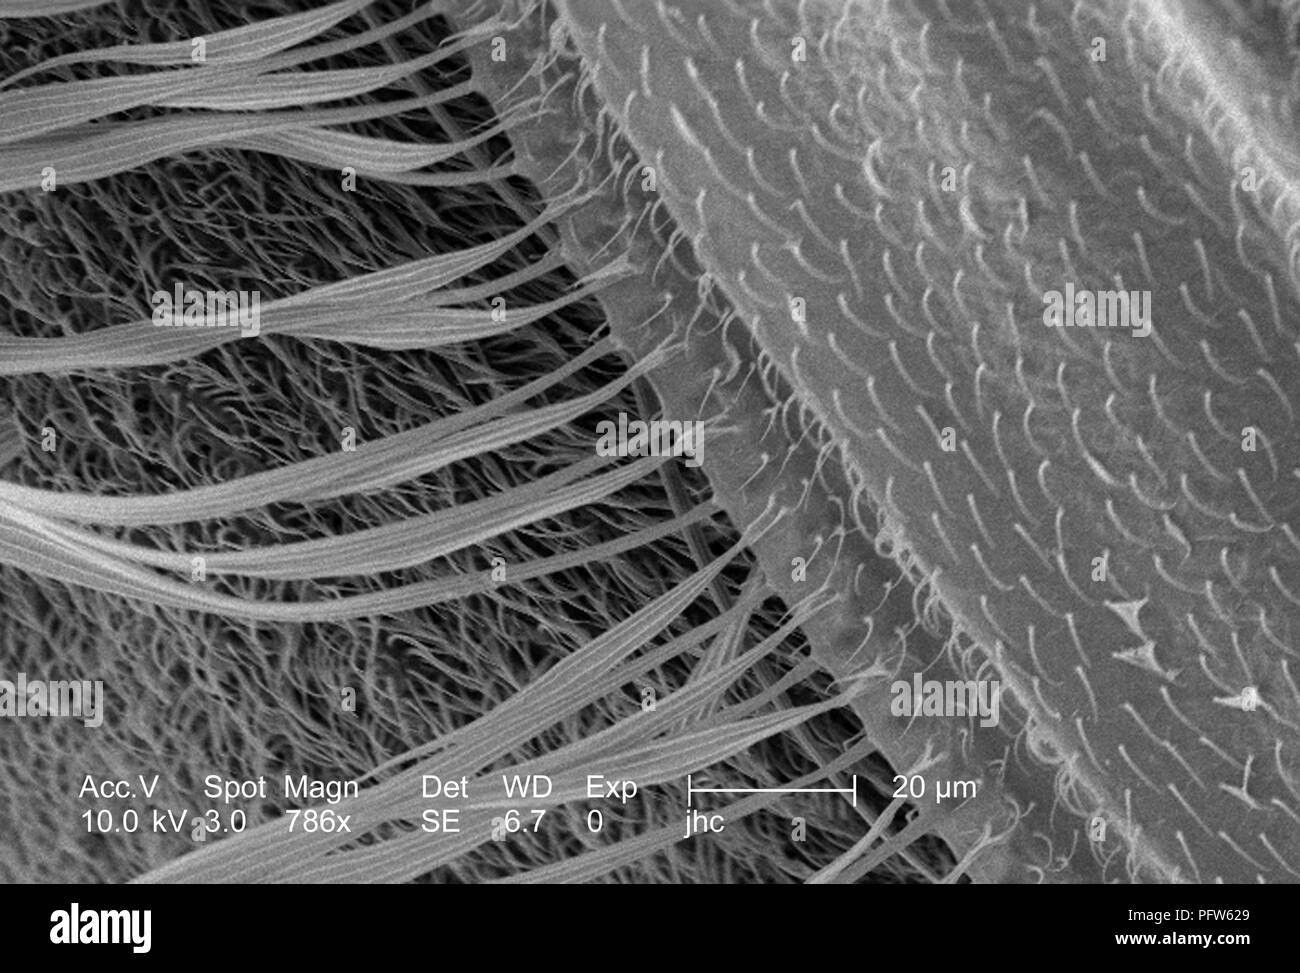 Caratteristiche morfologiche di un Anopheles gambiae zanzare ala, ha rivelato nel 786x di scansione ingrandita al microscopio elettronico (SEM) immagine, 2006. Immagine cortesia di centri per il controllo delle malattie (CDC) / Dr Paolo Howell. () Foto Stock